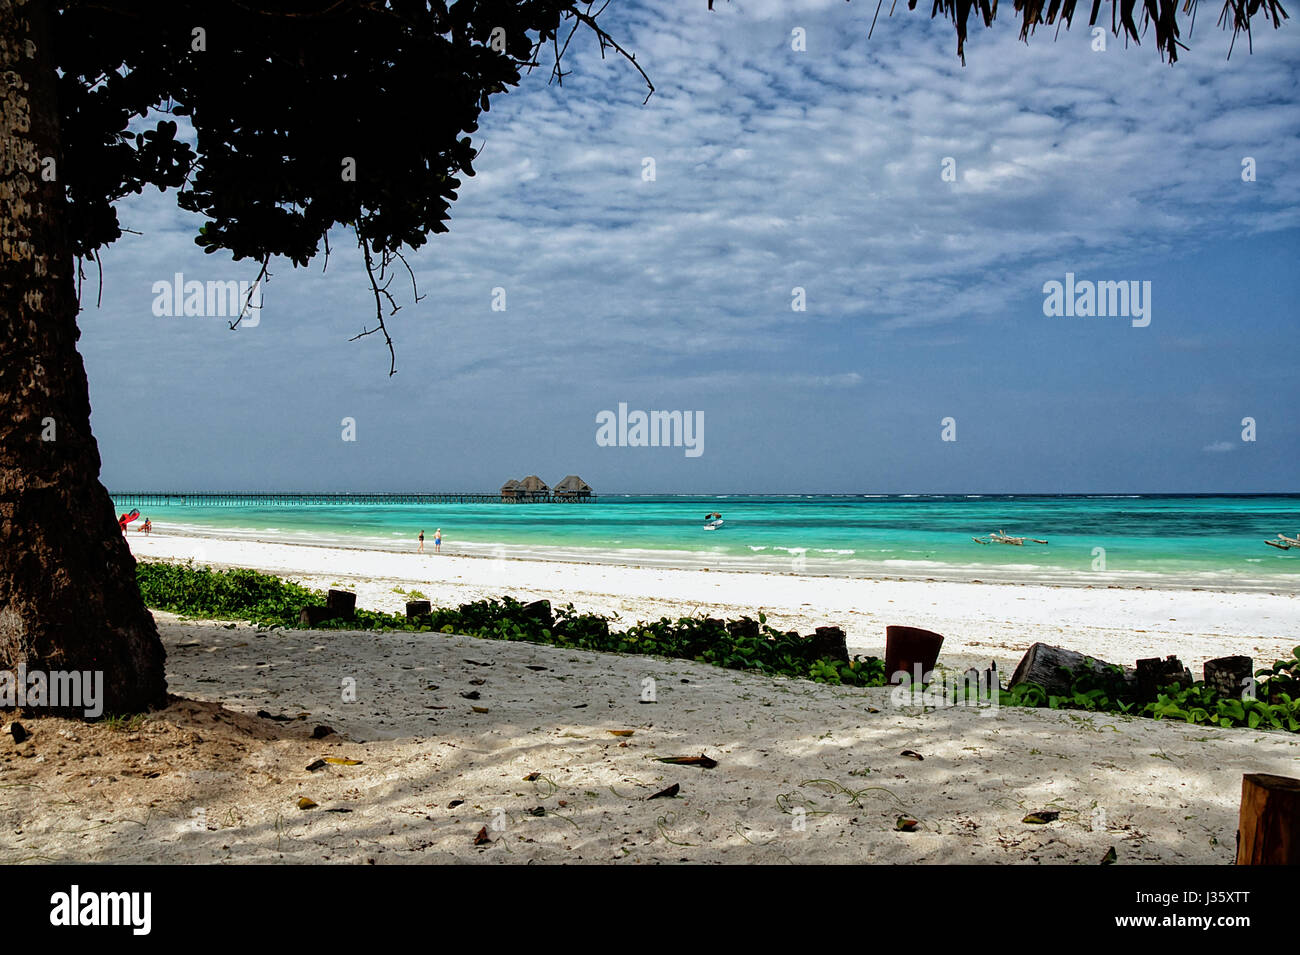 Tropischen weißen Strand und Holz Palafitte auf Hintergrund - Zanzibar Island - Tansania - Afrika Stockfoto